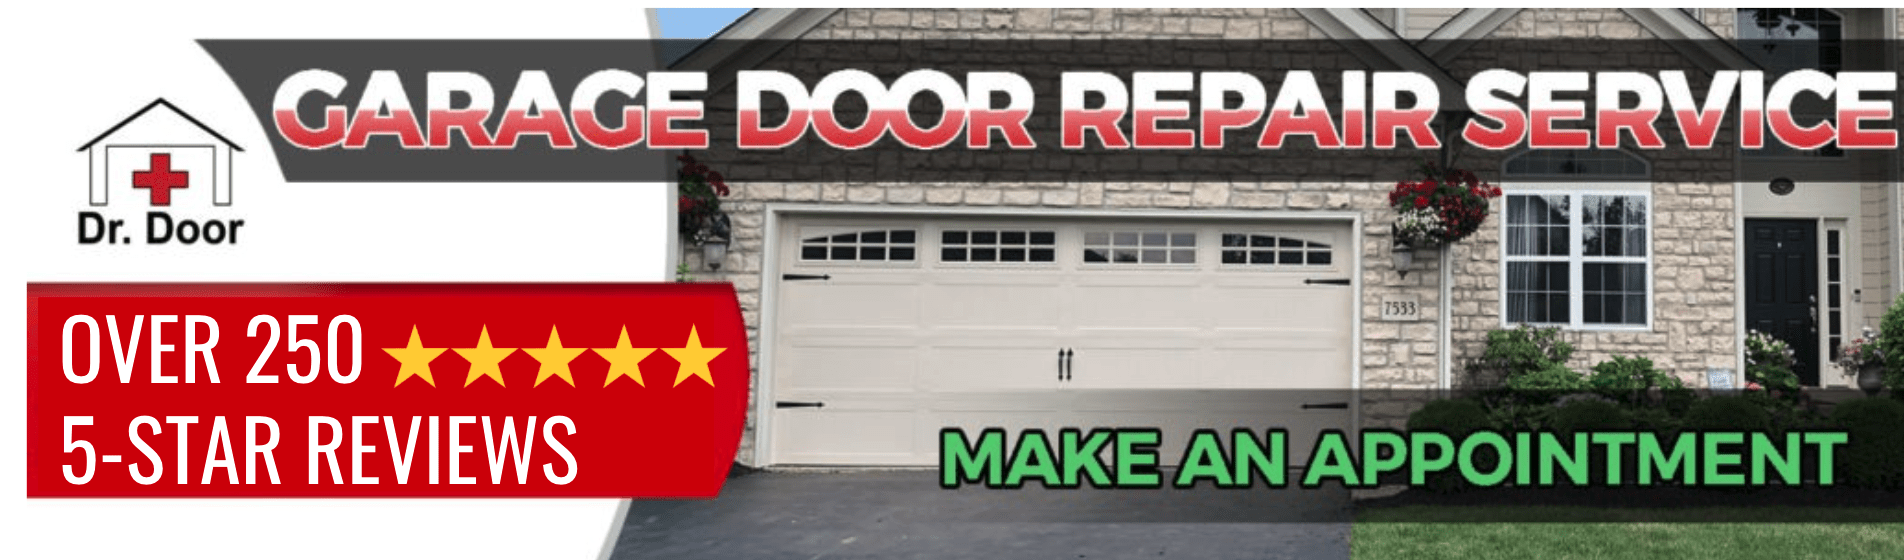 Garage Door Company Lancaster Oh, Dr Garage Doors Reviews